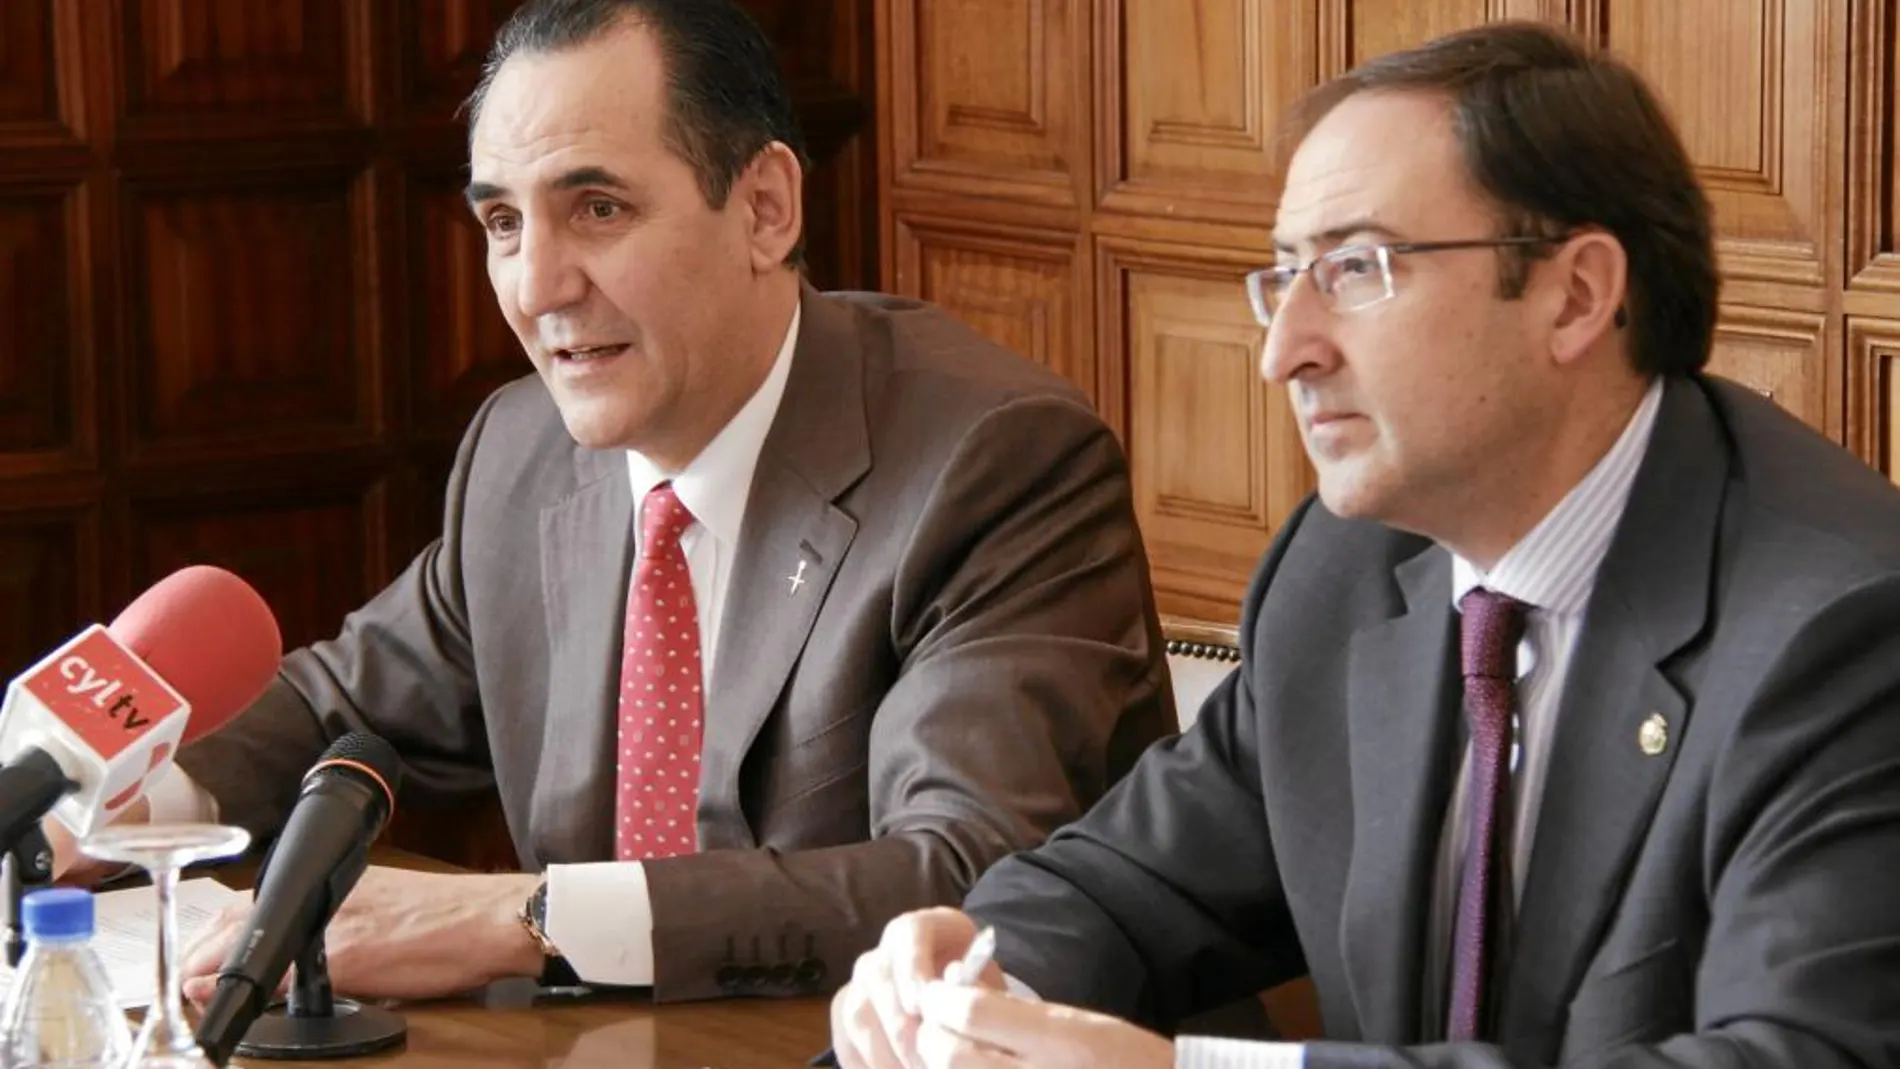 El presidente de Iberaval, José Rolando Álvarez, y el alcalde de Palencia, Alfonso Polanco, presentan el acuerdo